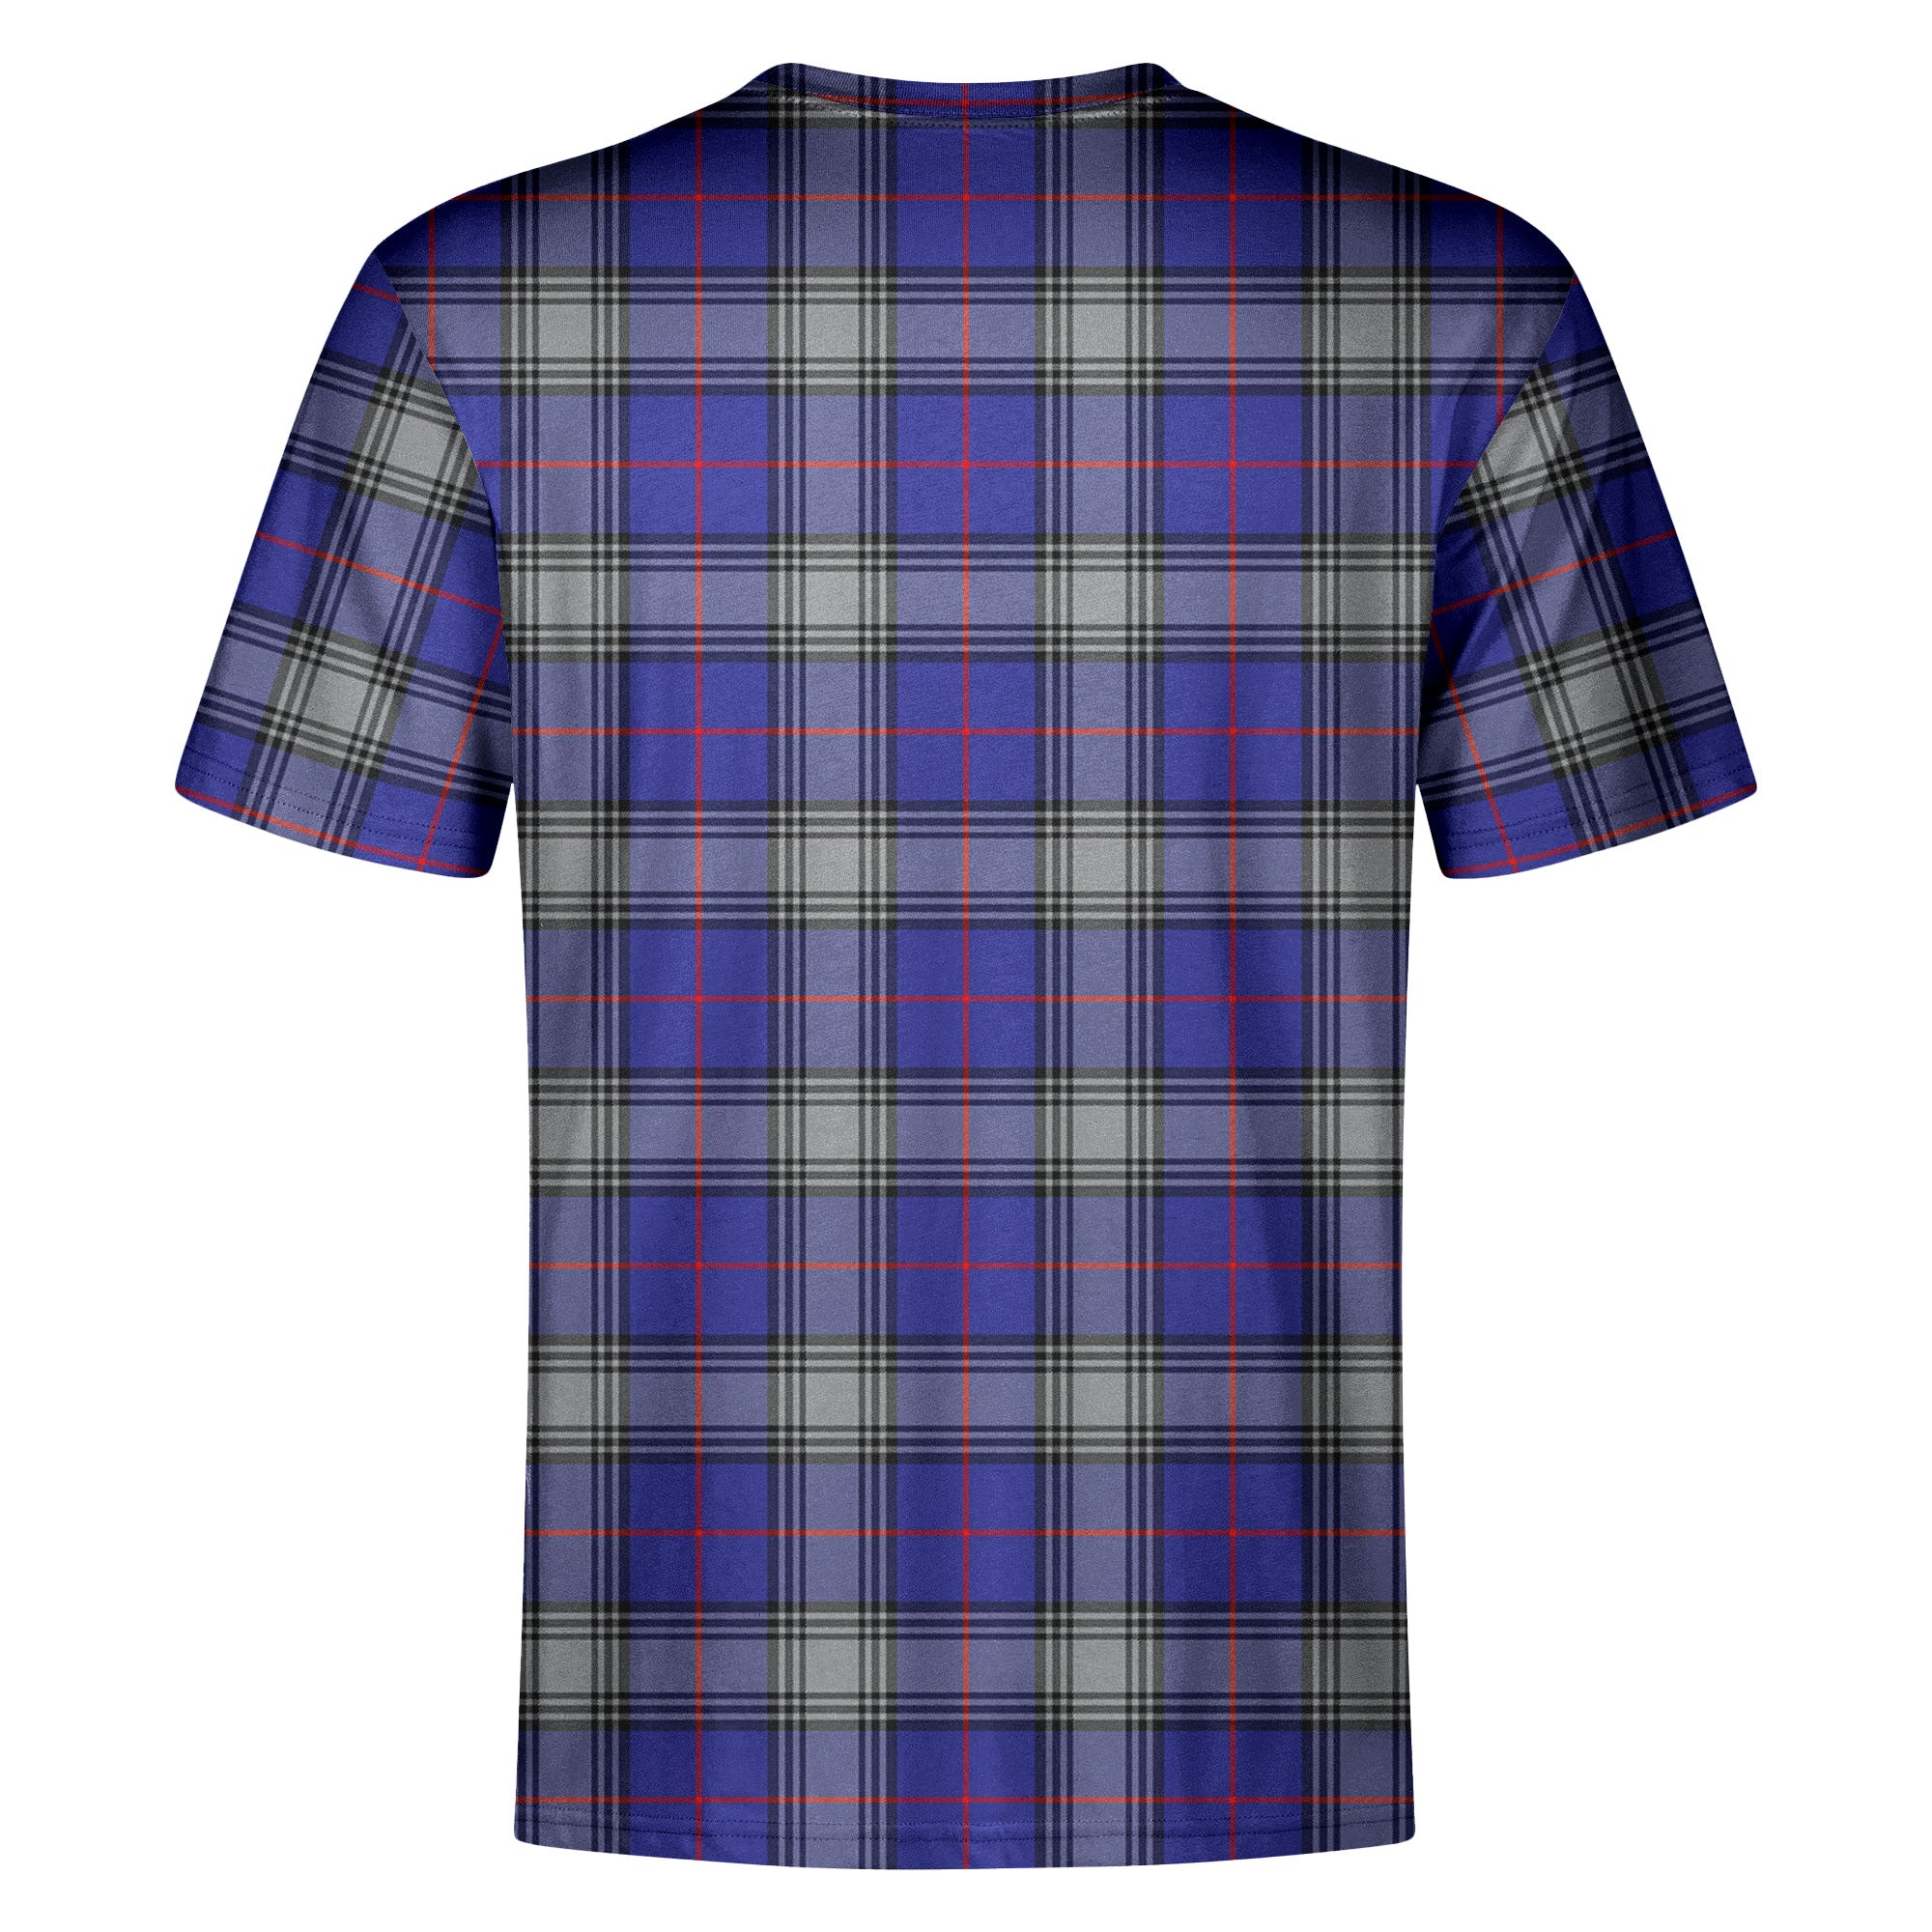 Kinnaird Tartan Crest T-shirt